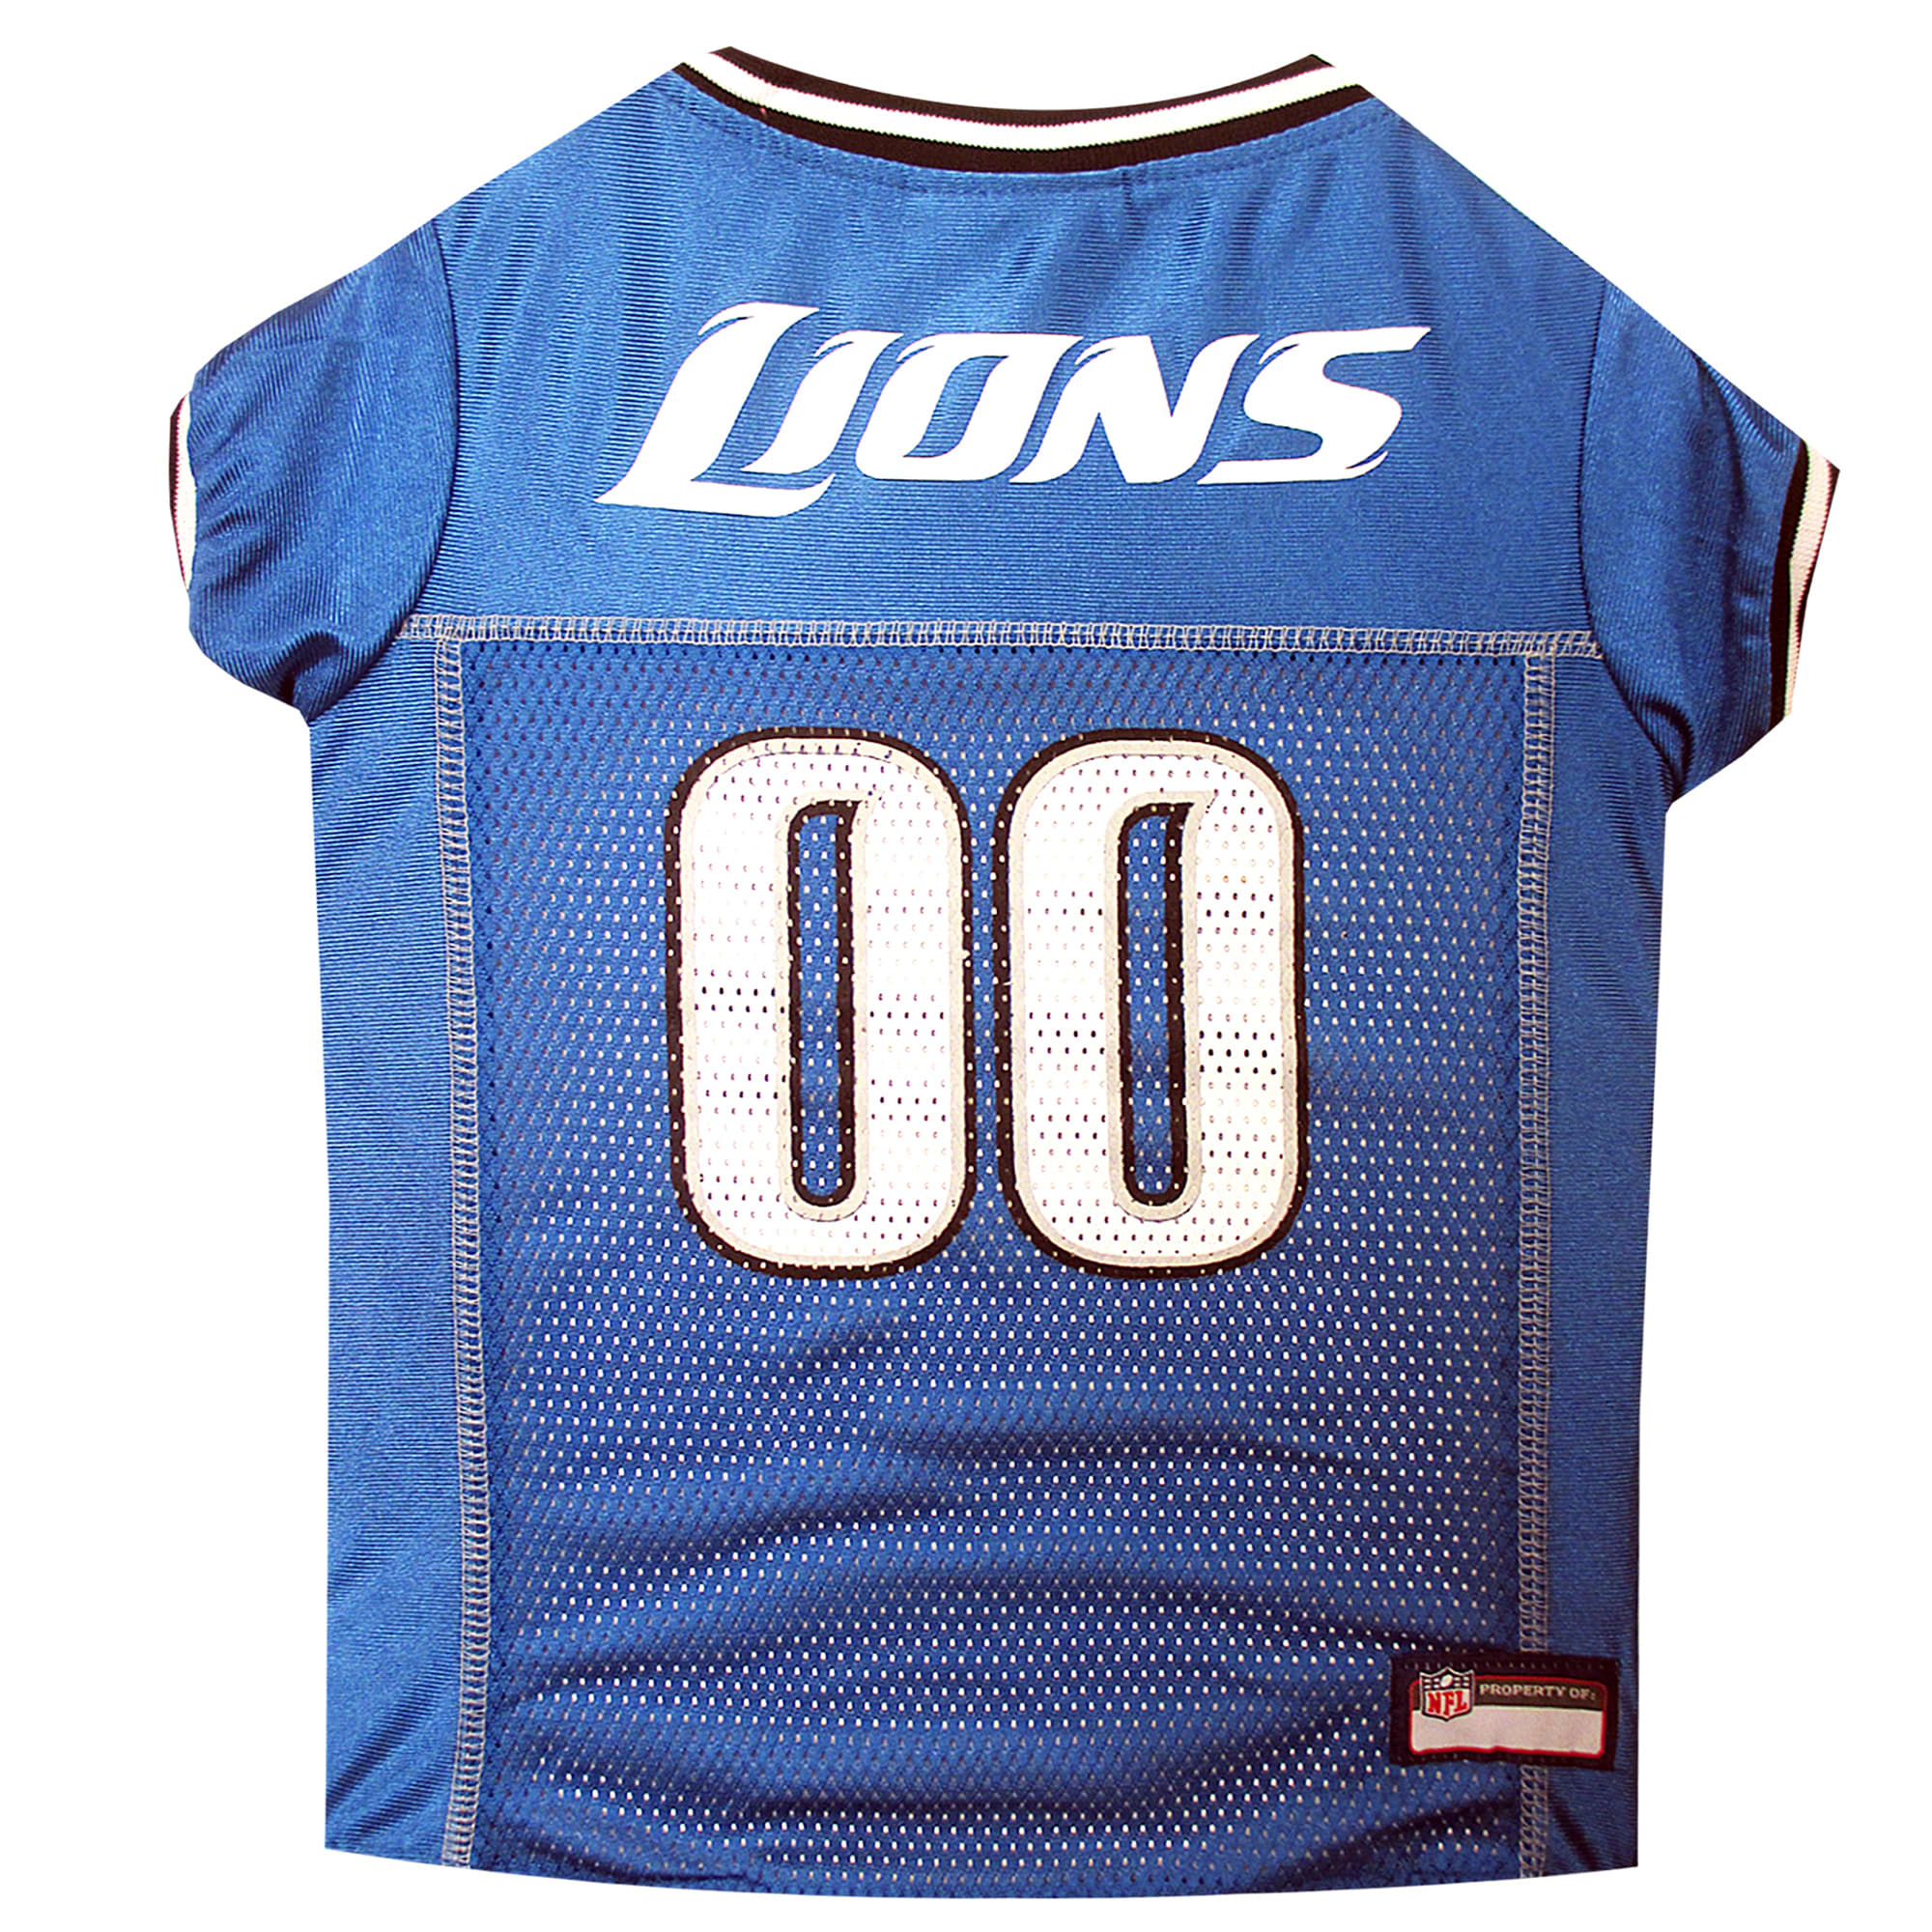 detroit lions pet jersey